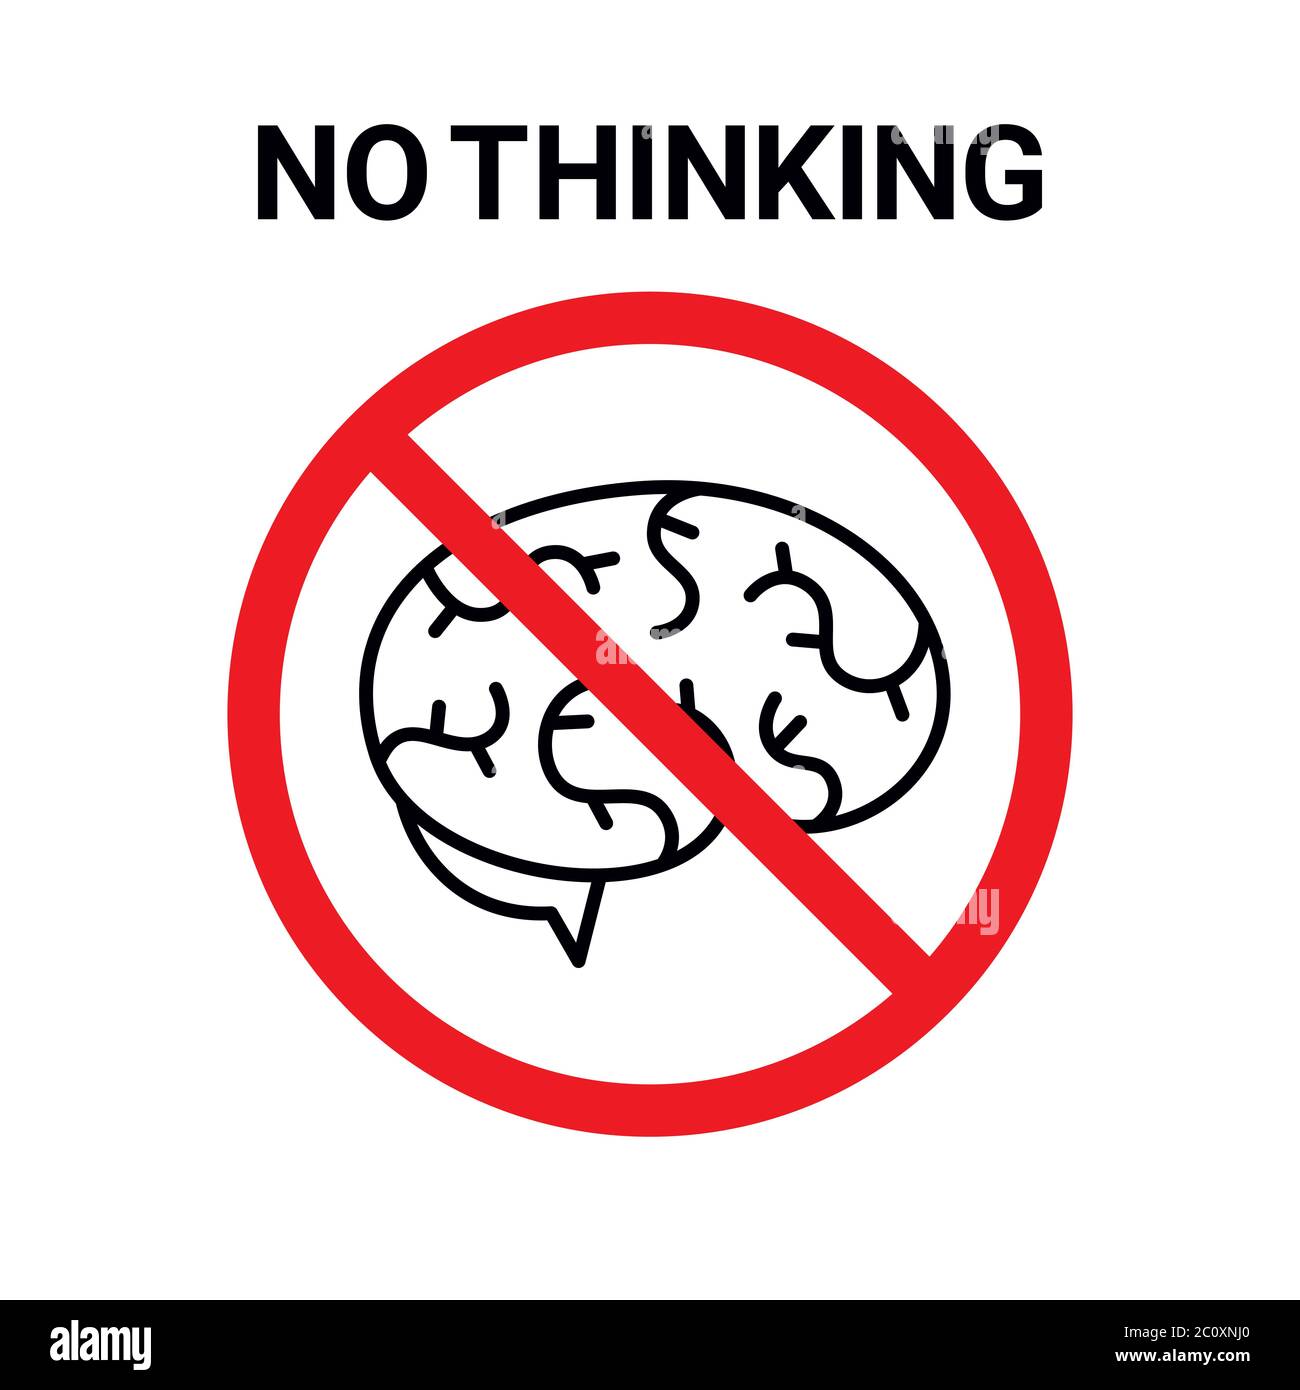 Illustrazione vettoriale. Cartello di divieto con l'icona del cervello umano e testo 'Nessun pensiero'. Isolato su bianco. Formato quadrato. Illustrazione Vettoriale